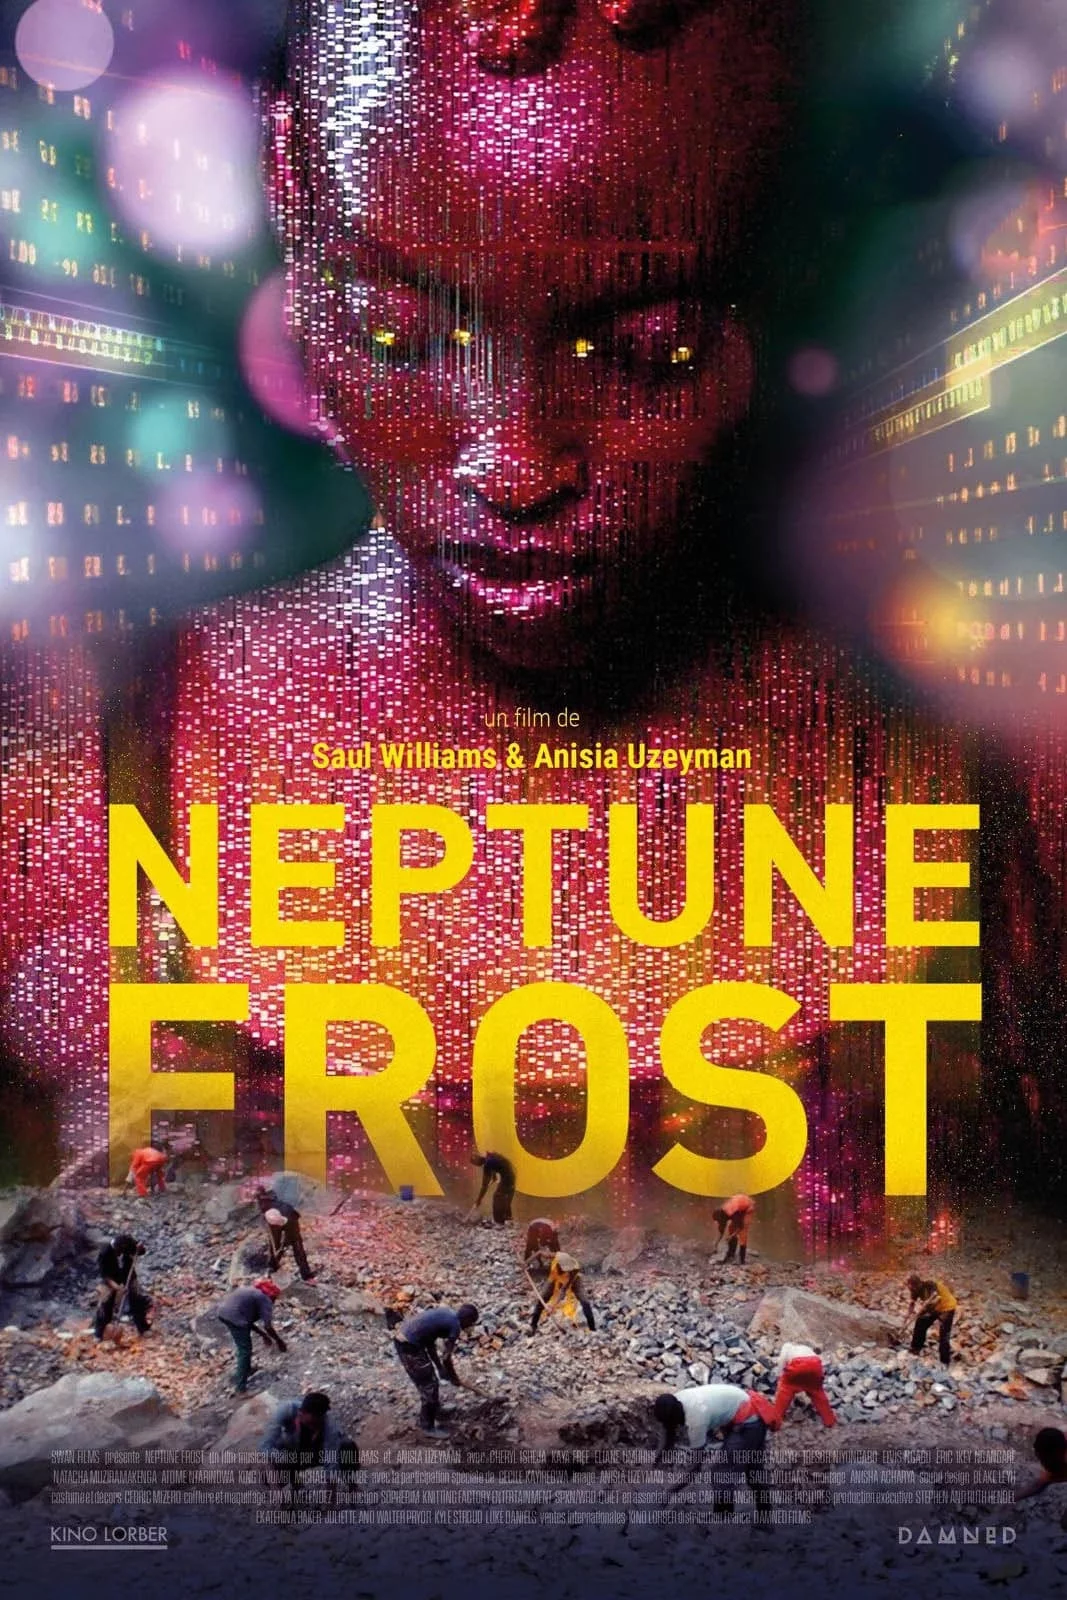 Photo du film : Neptune Frost